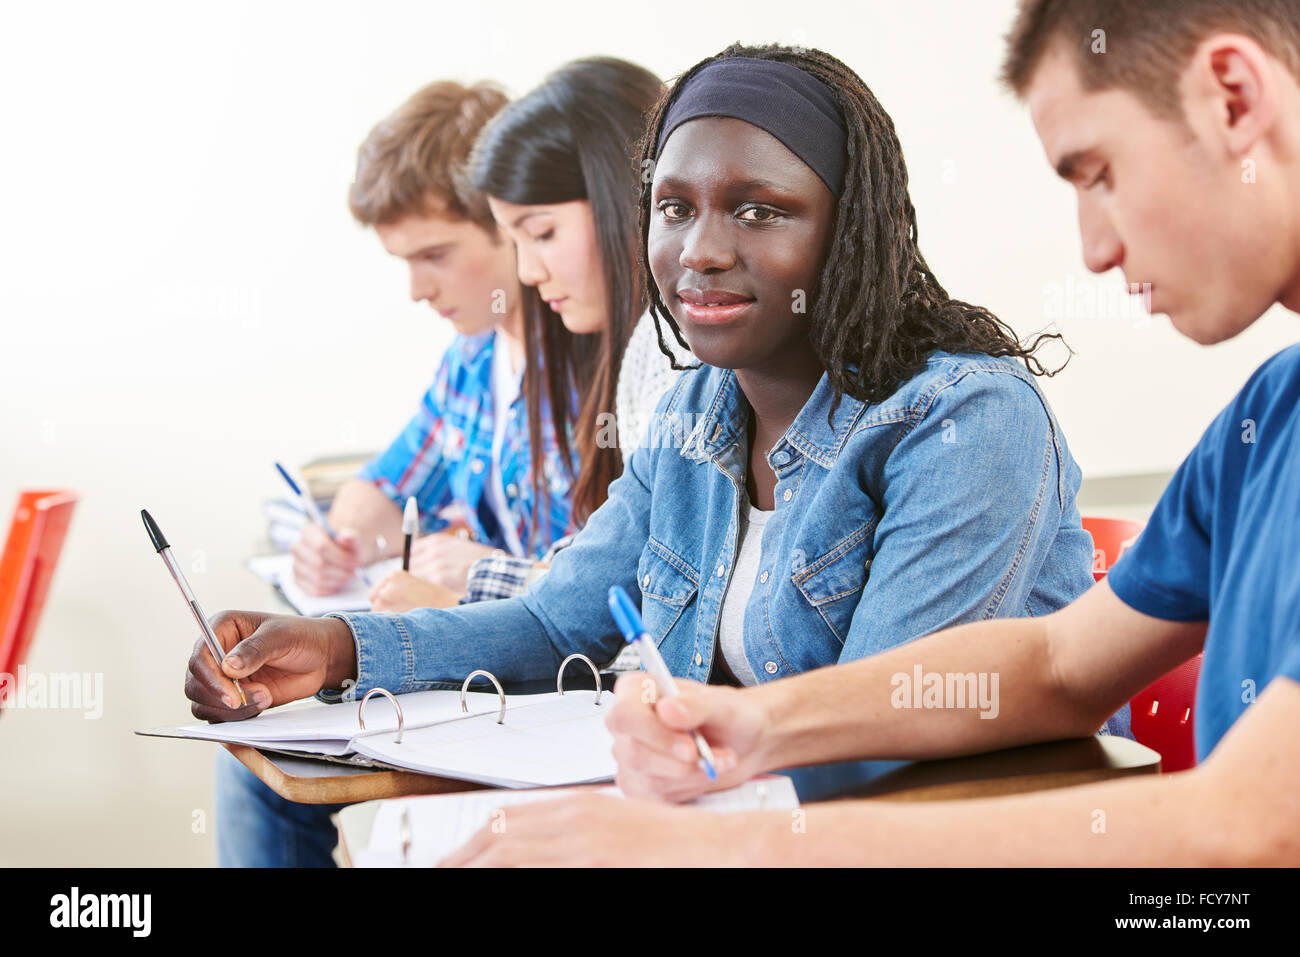 Estudiante africano teniendo una difícil prueba en la universidad Foto de stock